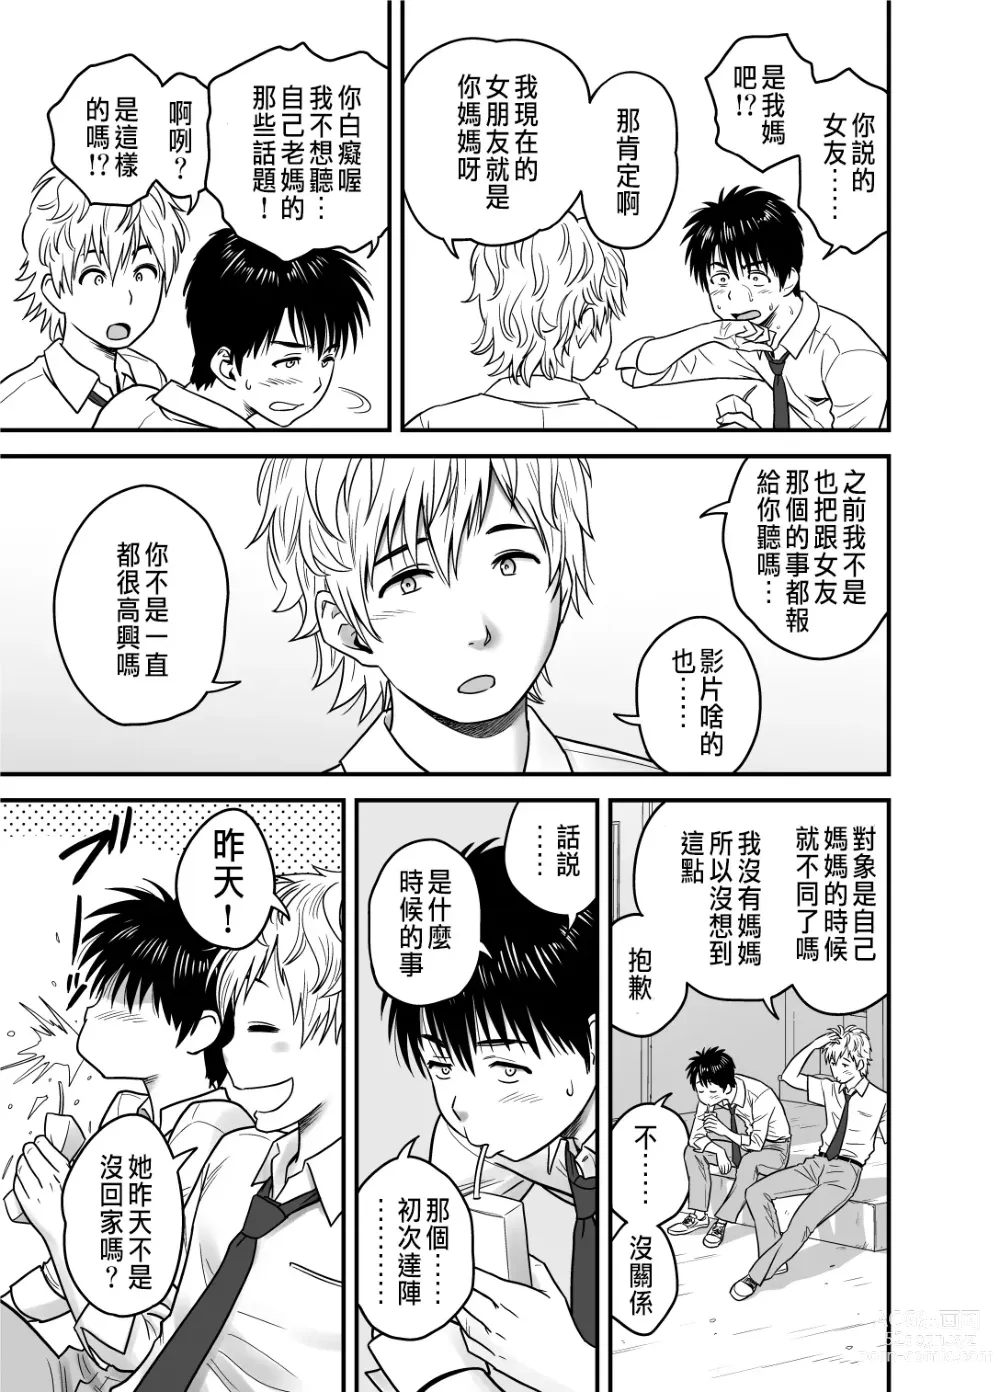 Page 19 of manga 母が友カノになったので1~3